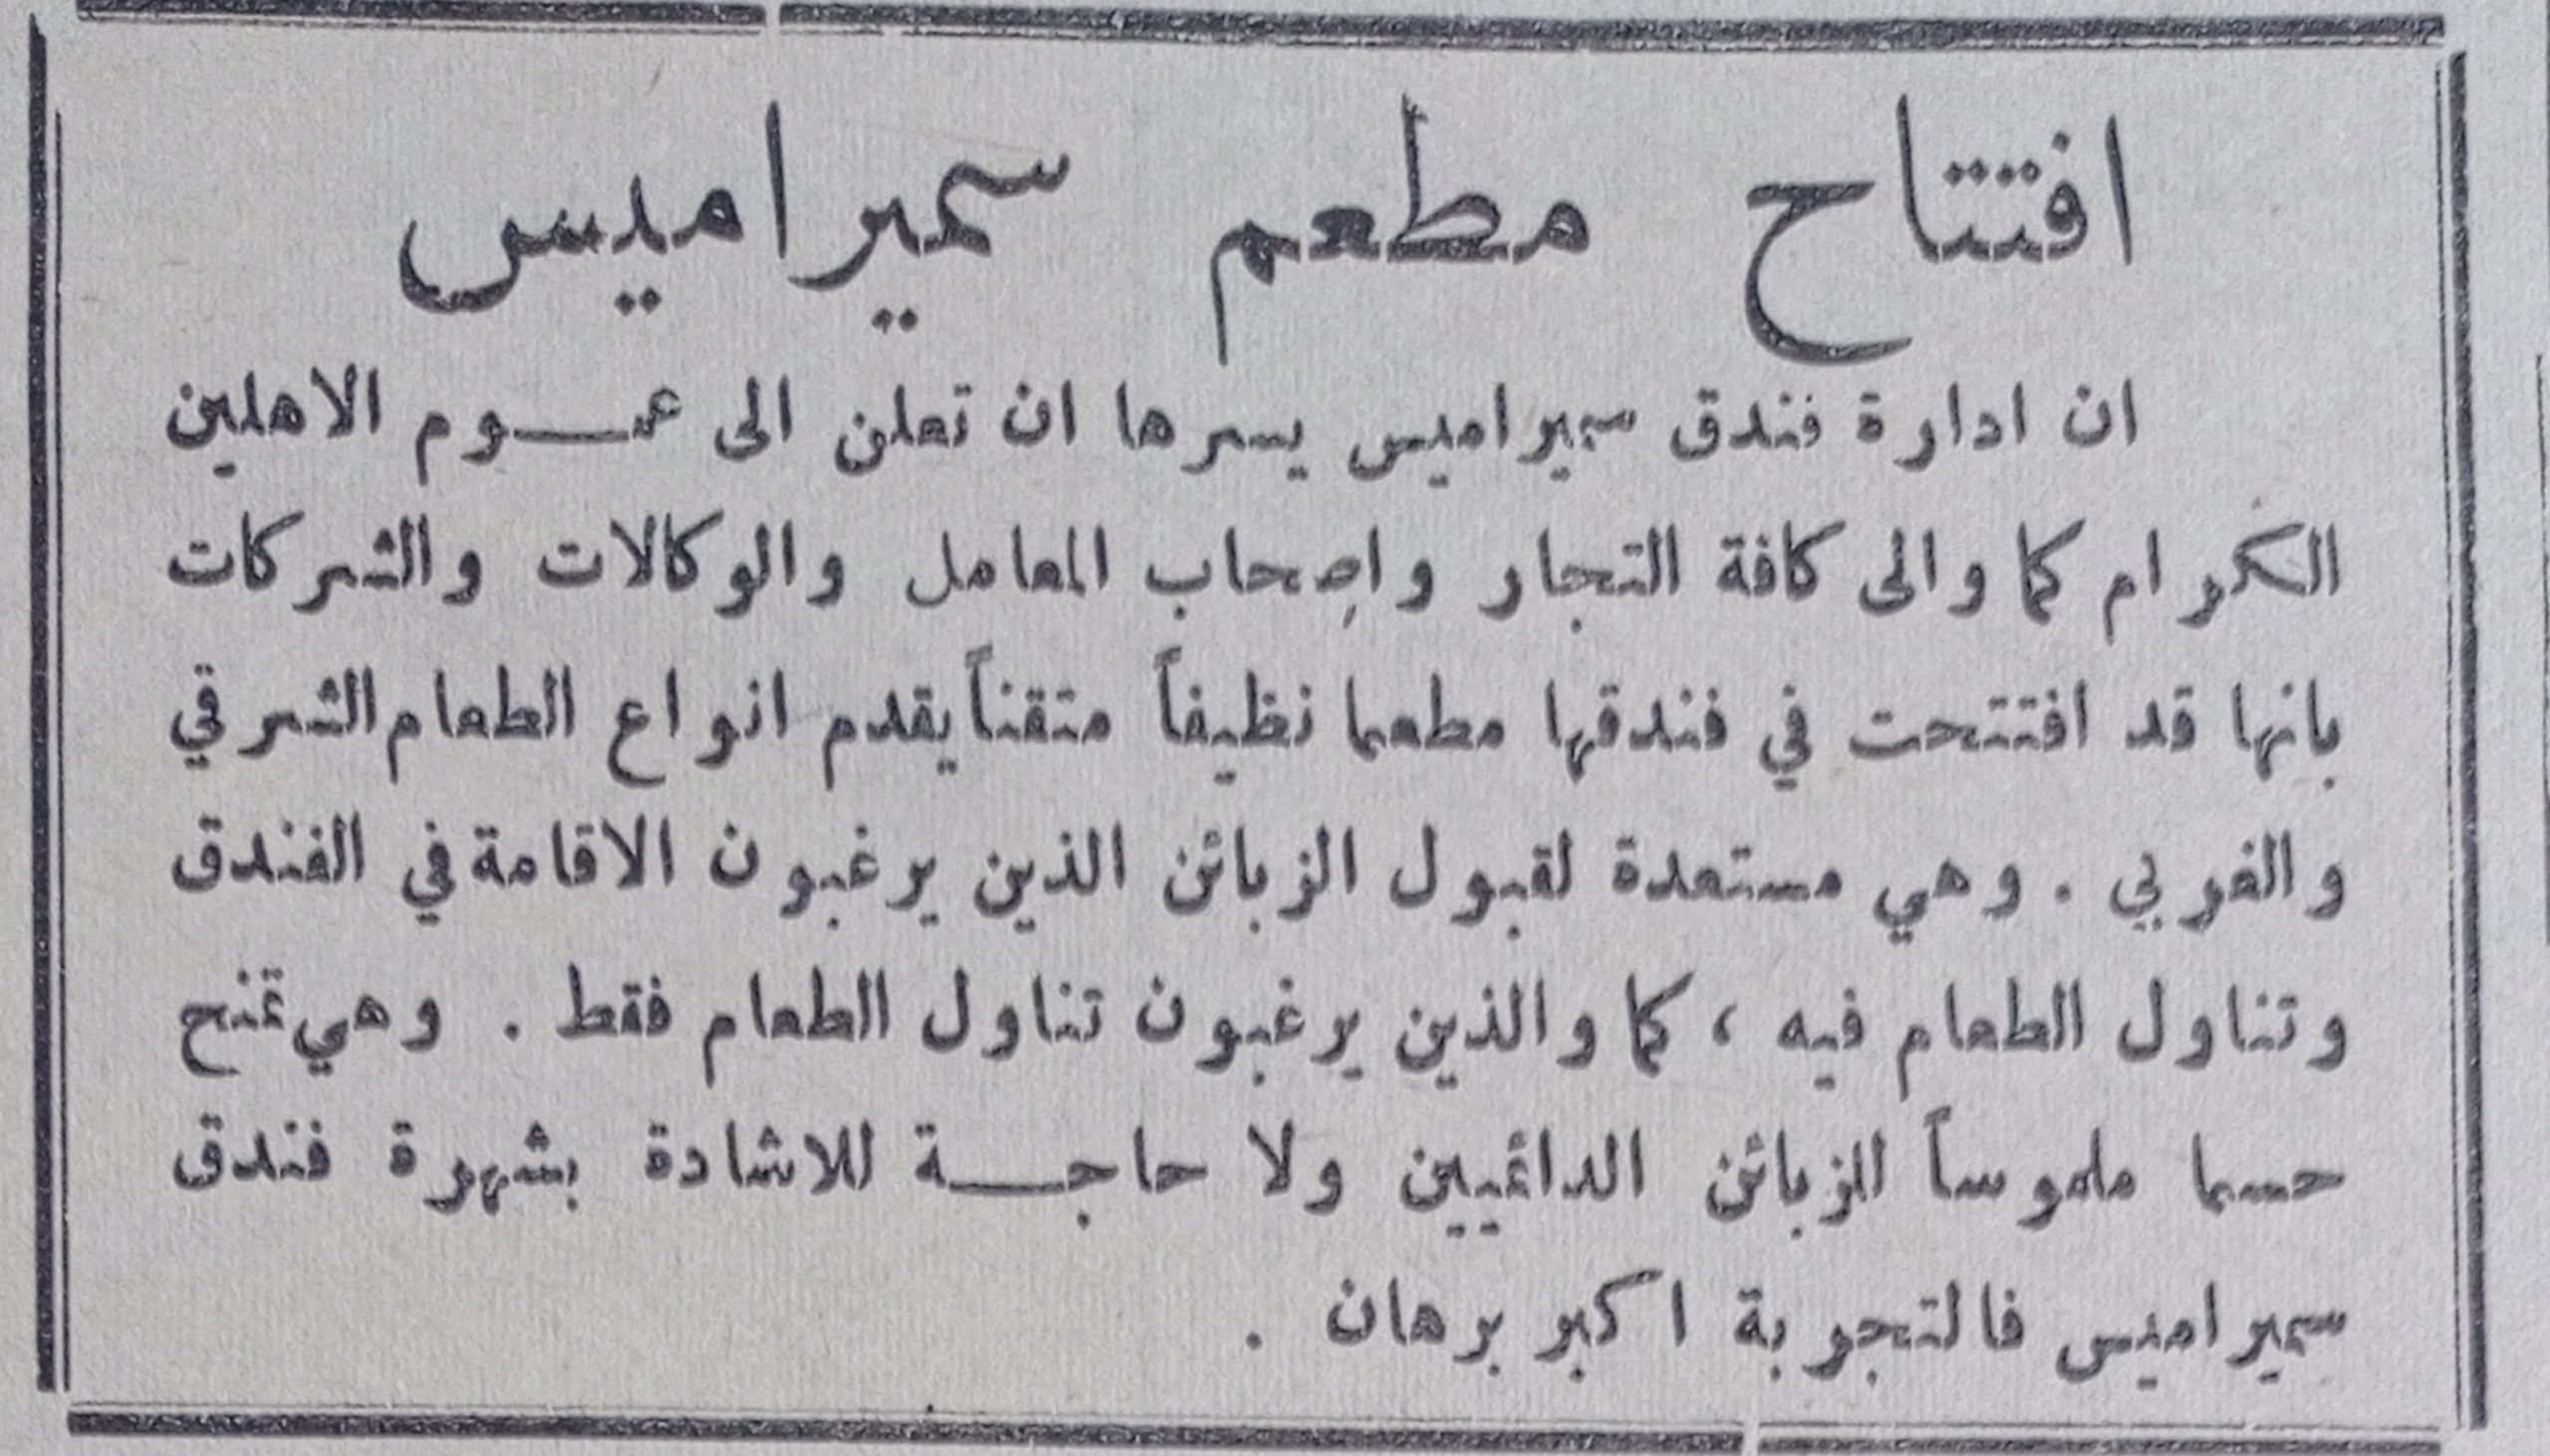 التاريخ السوري المعاصر - إعلان عن افتتاح مطعم سميراميس ضمن فندق سمير اميس في حلب عام 1956